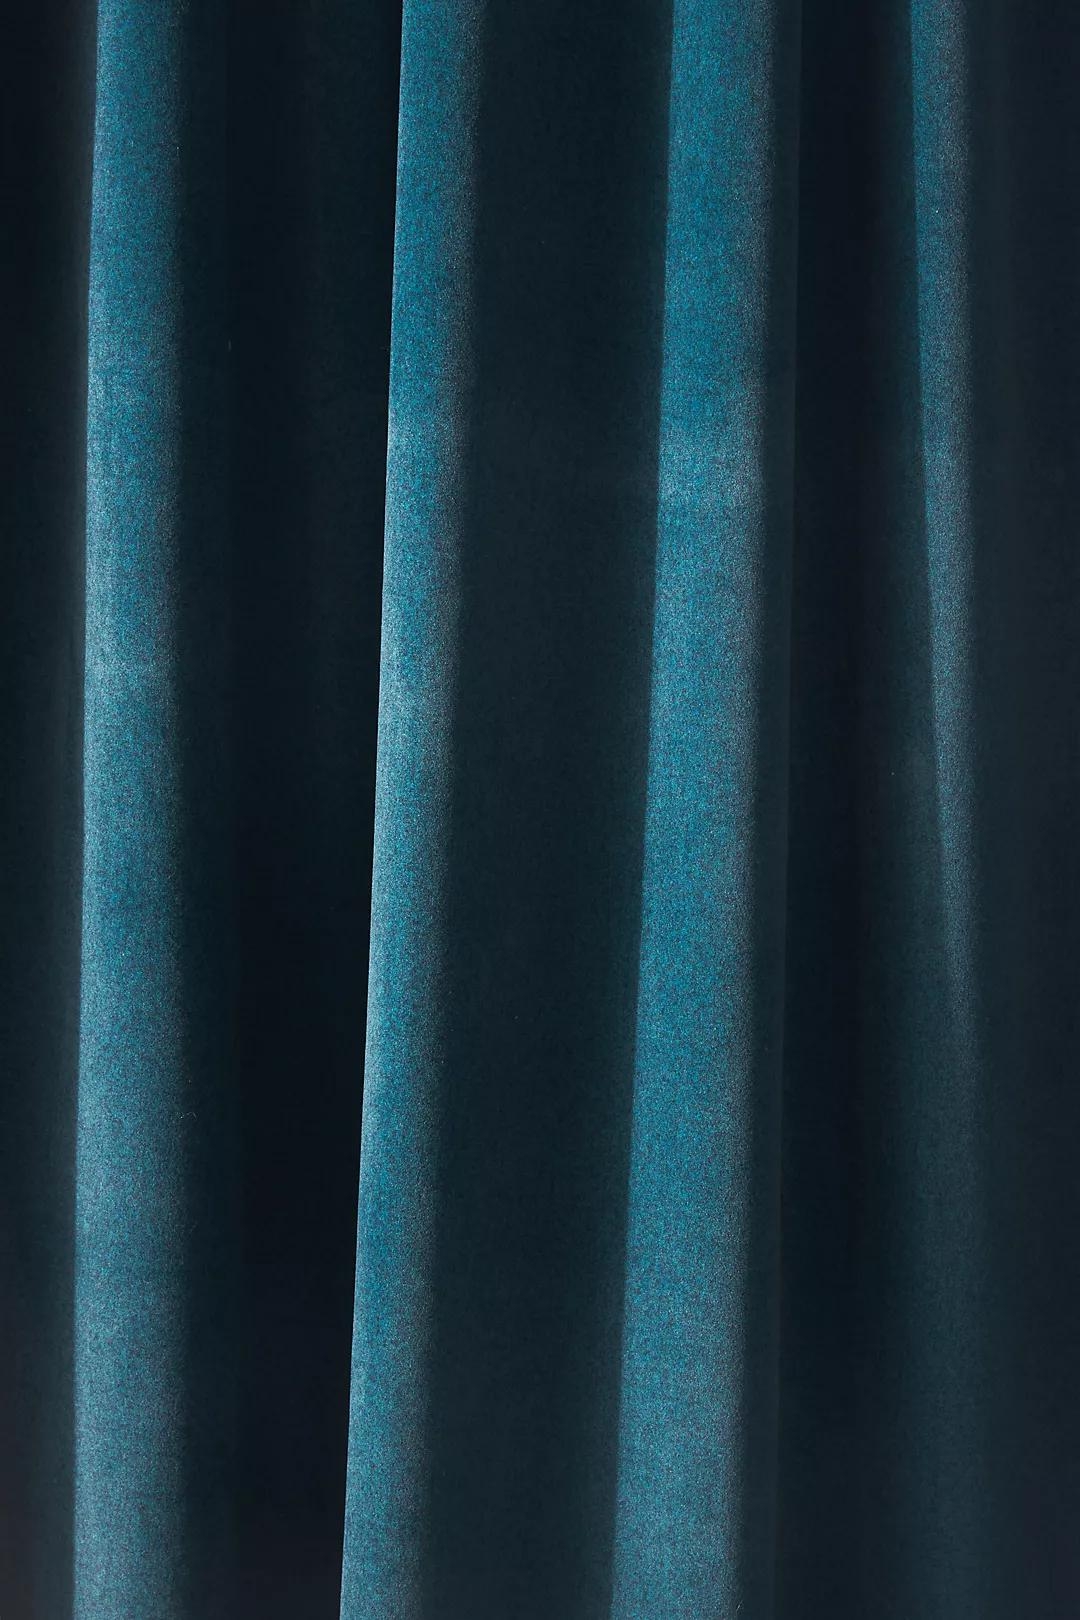 Addie Velvet Curtain, 50"x96", Blue - Image 2